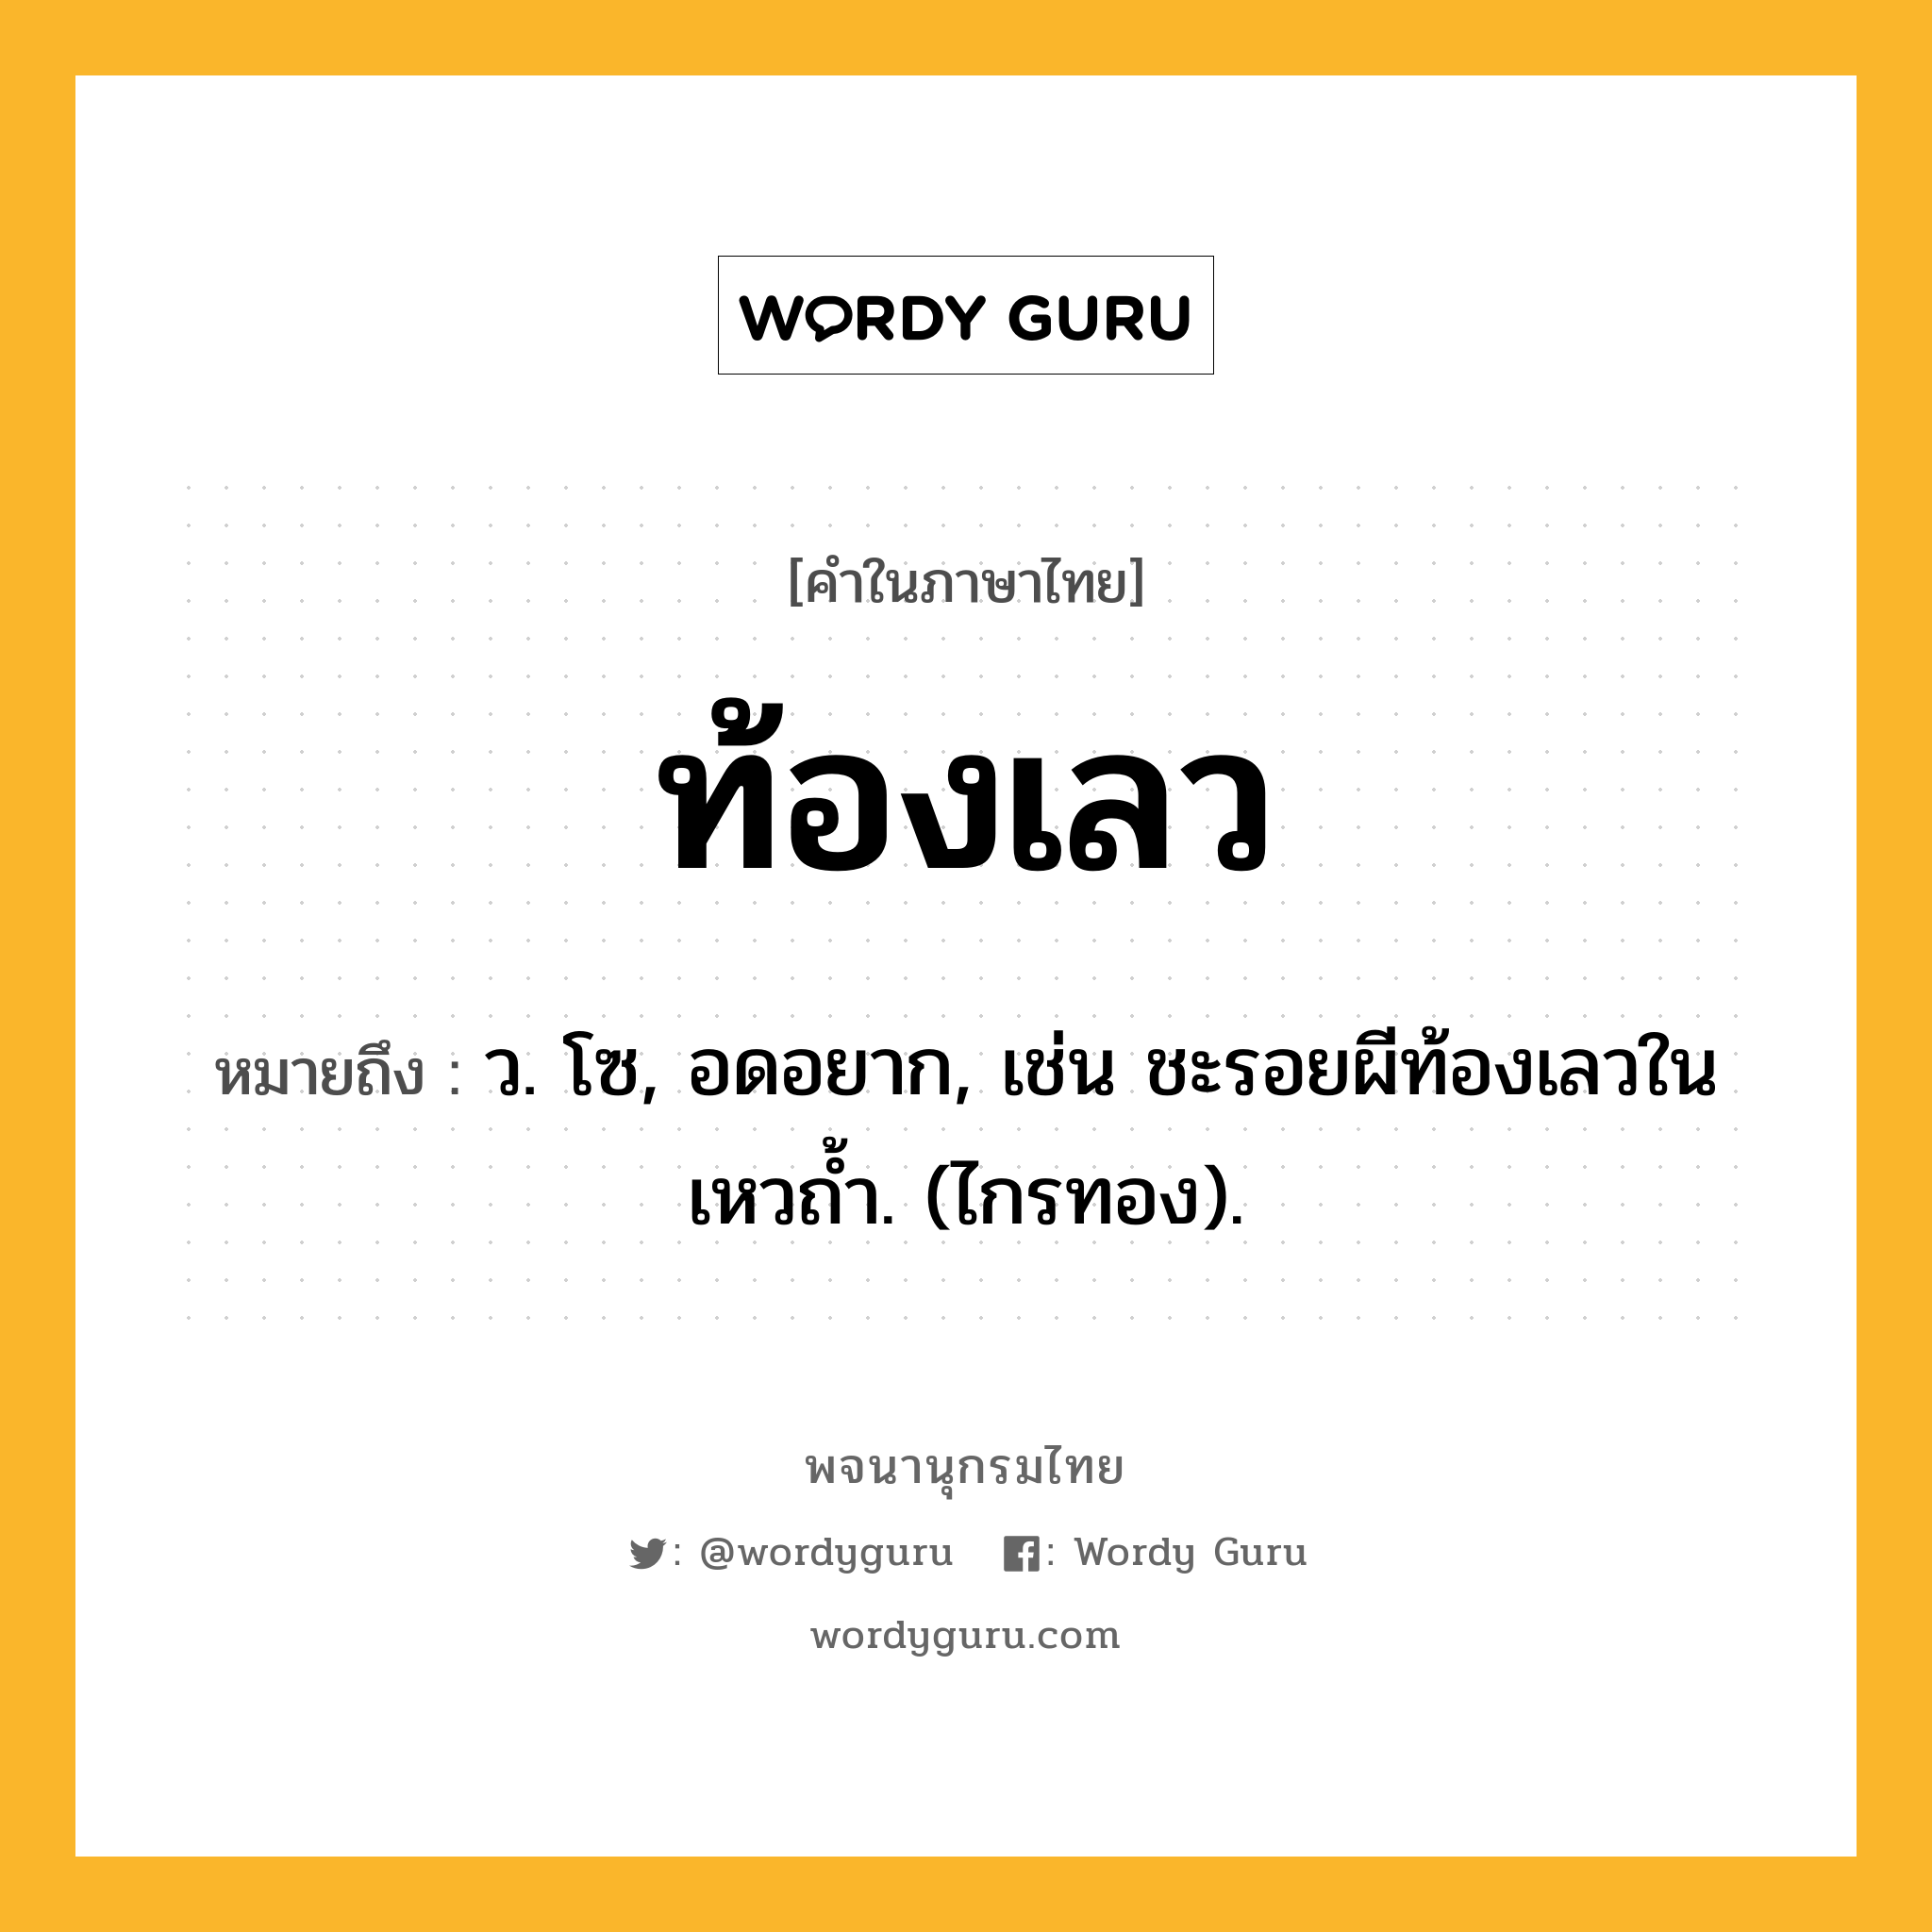 ท้องเลว หมายถึงอะไร?, คำในภาษาไทย ท้องเลว หมายถึง ว. โซ, อดอยาก, เช่น ชะรอยผีท้องเลวในเหวถํ้า. (ไกรทอง).